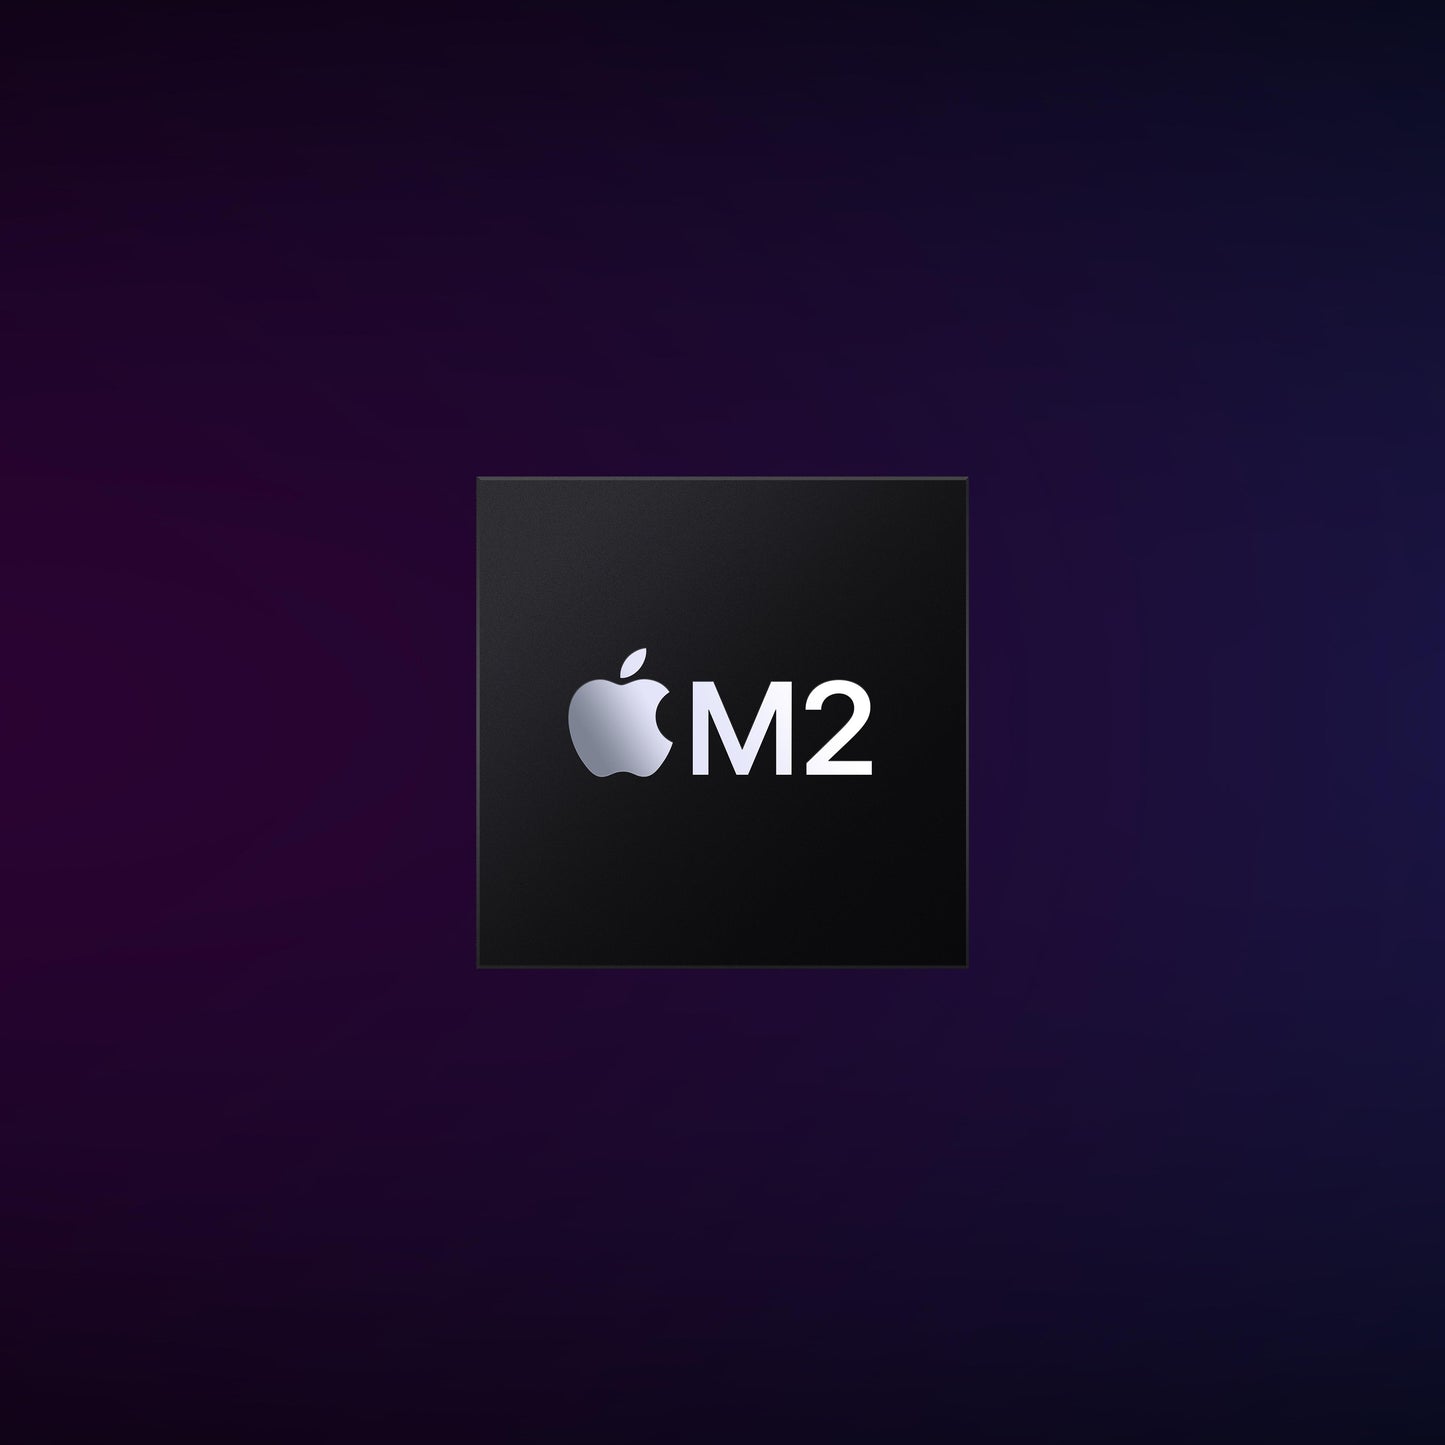 Mac mini: Apple M2 chip with 8‑core CPU and 10‑core GPU, 256GB SSD - Silver